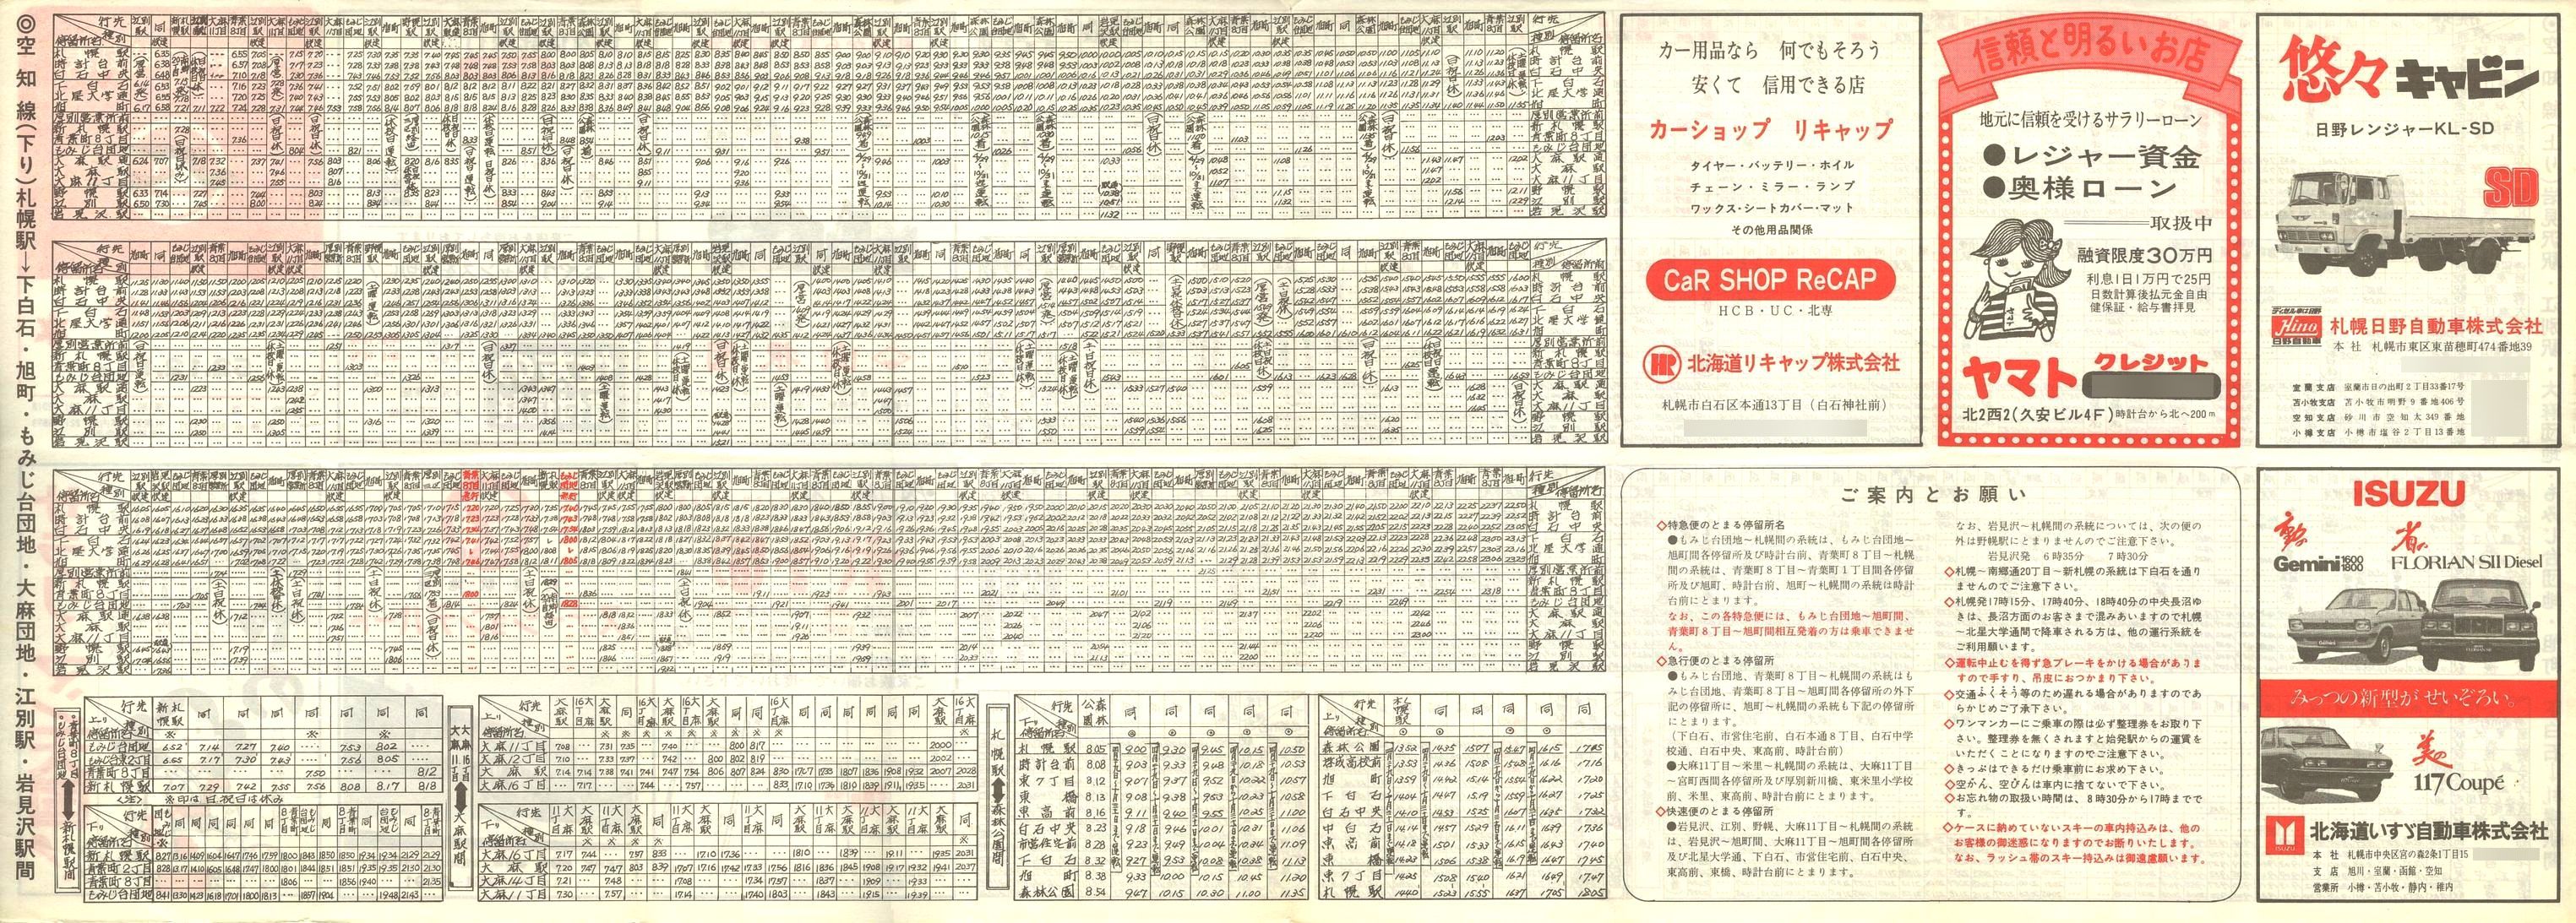 1977-12-15改正_国鉄バス_空知線時刻表裏面